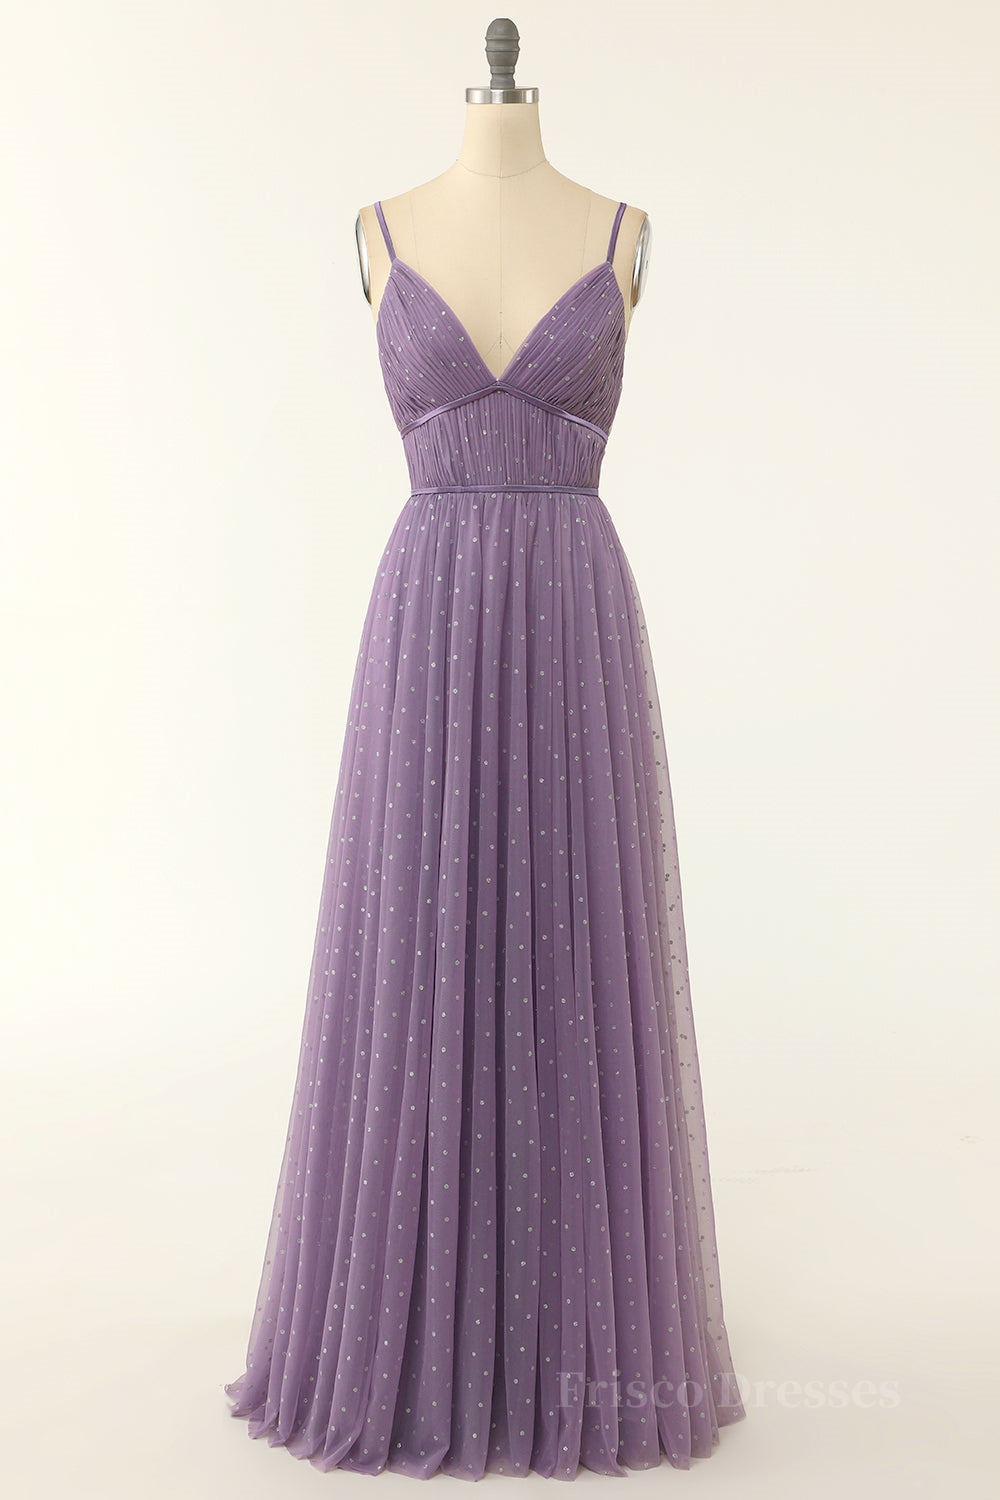 Purple Empire Straps A-line Long Formal Dress